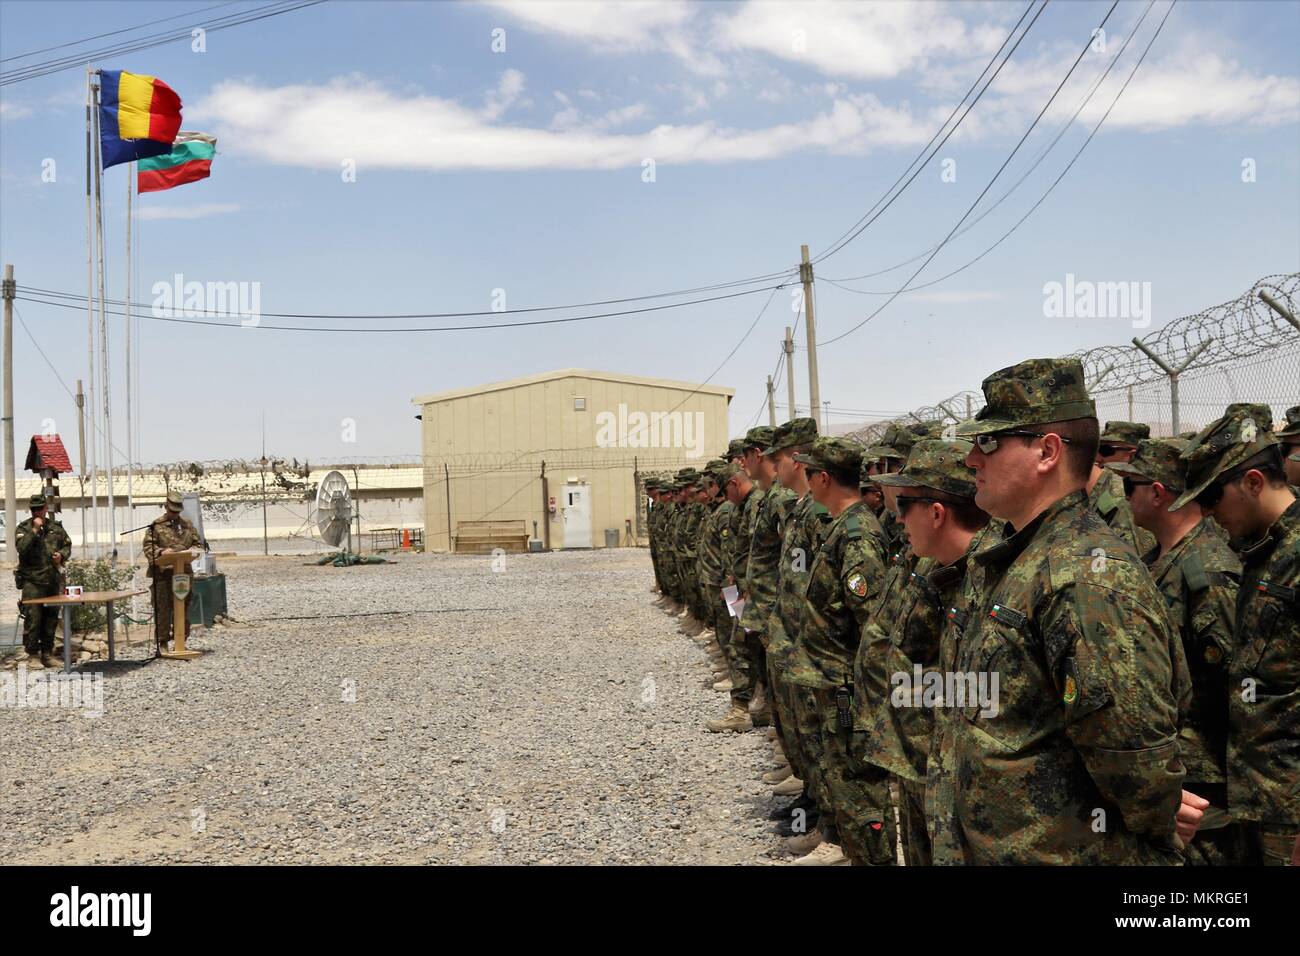 (6 maggio 2018) KANDAHAR AIRFIELD, Afghanistan -- bulgaro soldati dell esercito di stand in formazione a premi ricevuti durante una celebrazione di San Giorgio il giorno di Kandahar Airfield, Afghanistan, 6 maggio, 6 maggio 2018. Saint George's Day, noto anche come la Giornata Nazionale di coraggio, è un ufficiale bulgara vacanza che è stata celebrata dal momento che la formazione dell'esercito bulgaro 140 anni fa. Unità con l'esercito bulgaro sono una parte della NATO di sostegno risoluto missione assegnata al treno, consigliare e assistere Command-South (TAAC-S). (NATO foto rilasciata dal treno, consulenza e assistenza pubblica Command-South Af Foto Stock